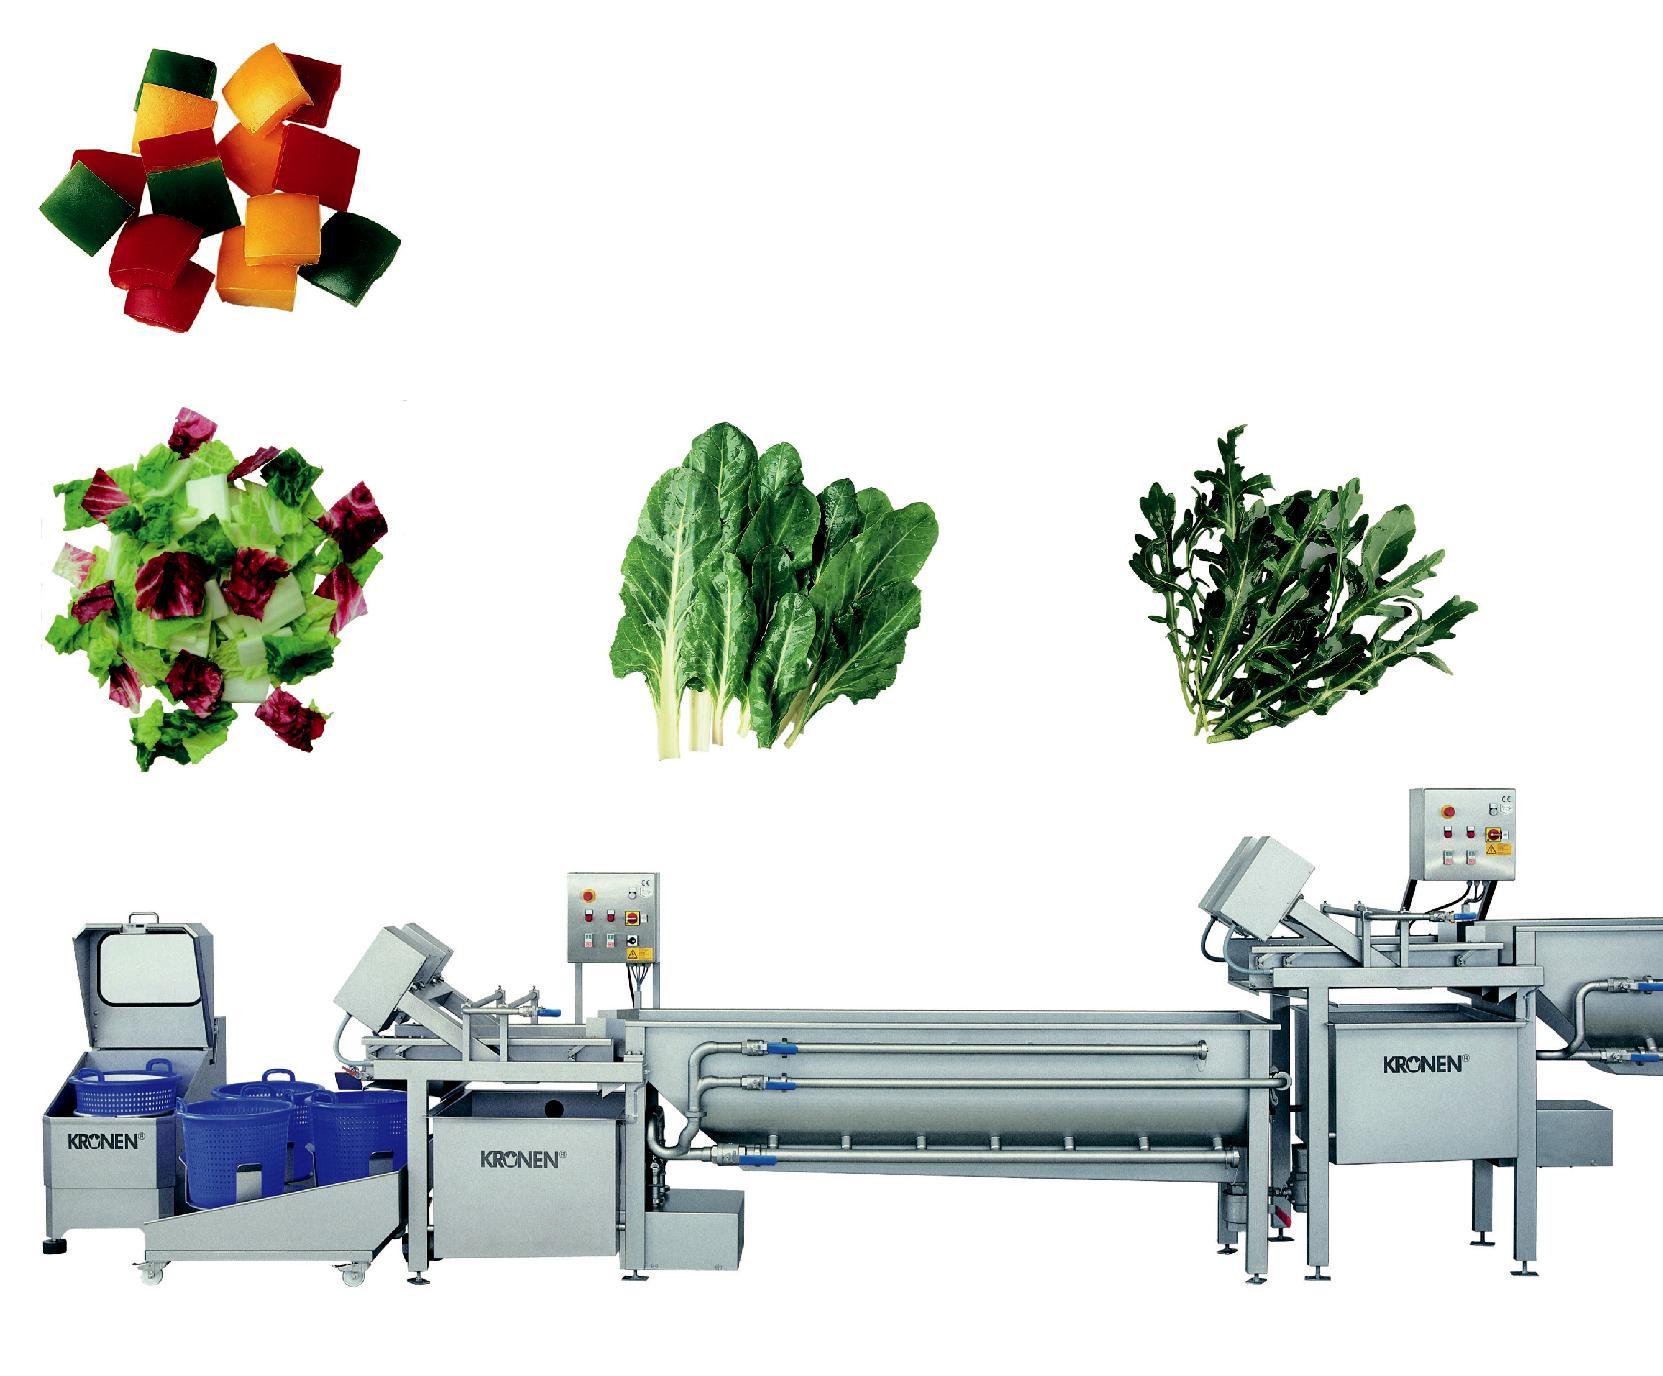 Цех переработки фруктов. Конвейерные станки для шинковки овощей (GD-586). Оборудование для измельчения овощей Kronen. Оборудование для пищевого производства. Линия мойки и фасовки овощей.